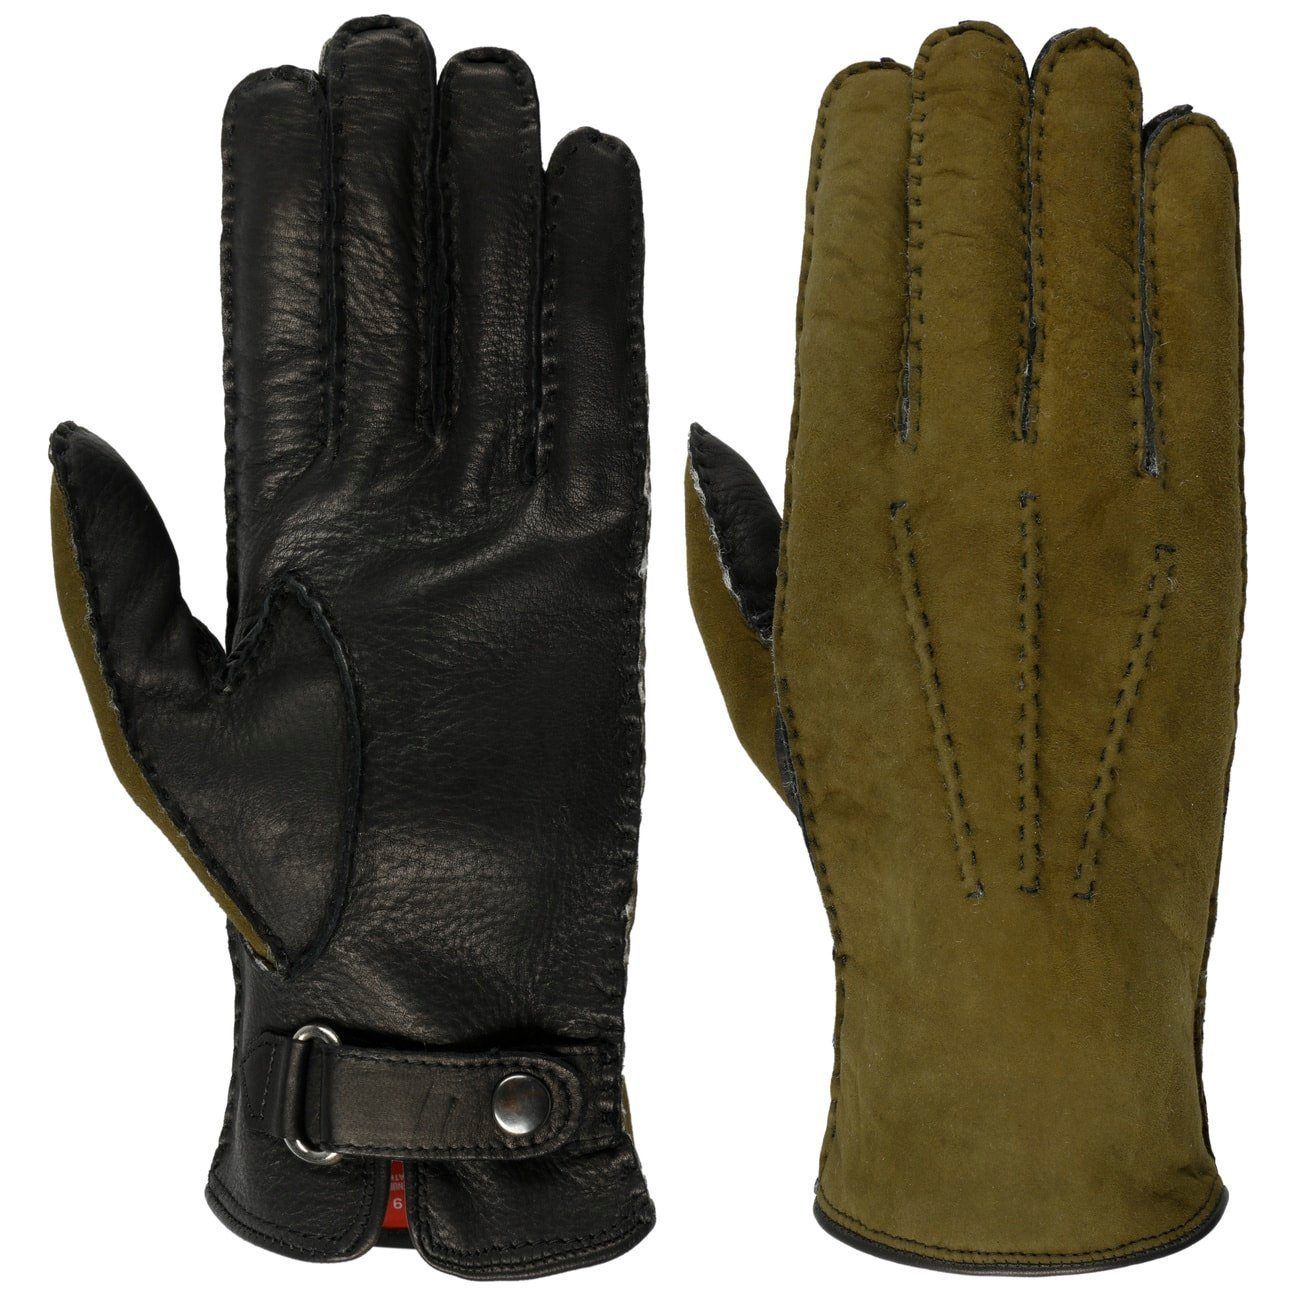 Caridei Lederhandschuhe Handschuhe mit Futter, Made in Italy oliv-schwarz